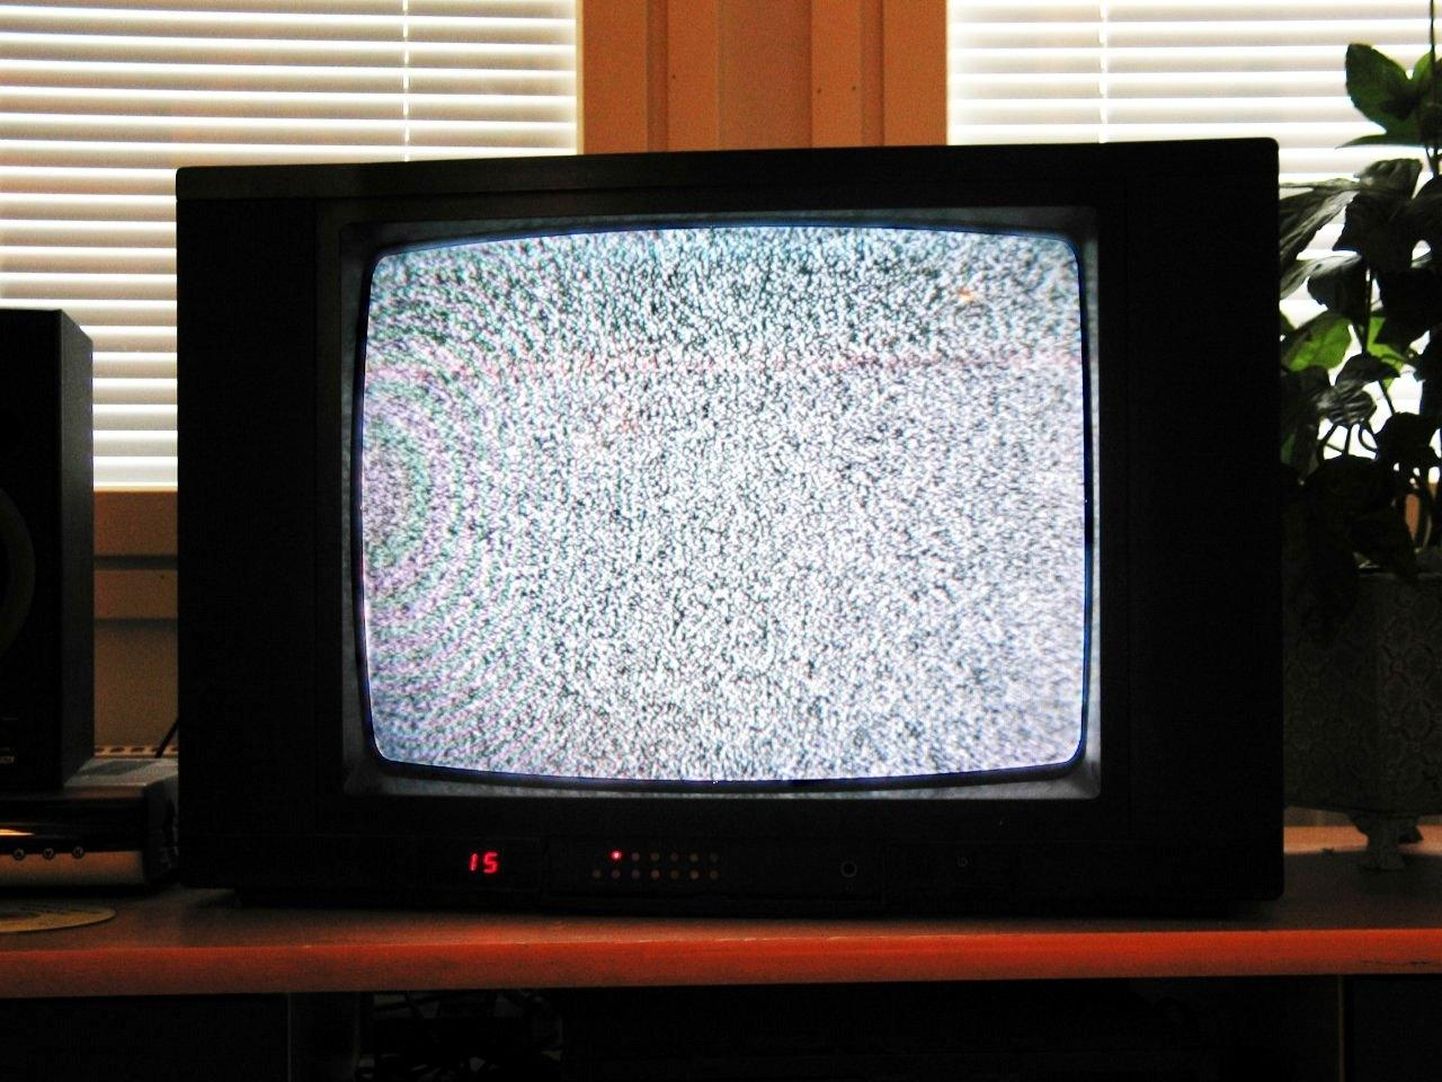 “Tuli aeg, kui teler enam pilti ei edastanud: oli vaja digiboksi. Jaa, uus tehnoloogia,” kirjutab pärnakas Isabell Maripuu ja ütleb, et nüüd on jälle uus aeg, mis nõuab uusi seadmeid, et televiisor pilti näitaks.